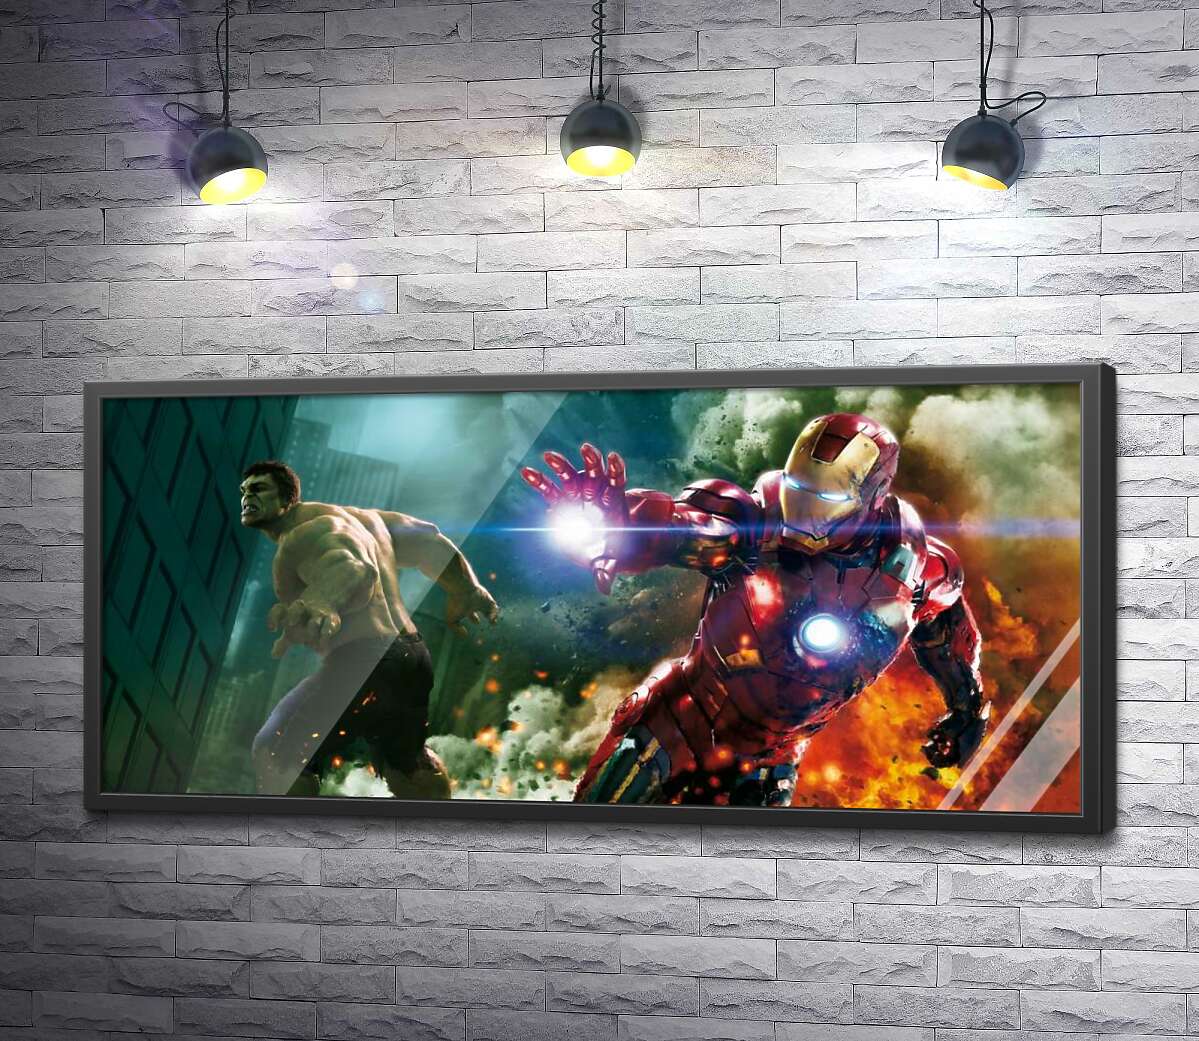 постер Непобедимые Халк (Hulk) и Железный человек (Iron Man) в фильме "Мстители" (The Avengers)